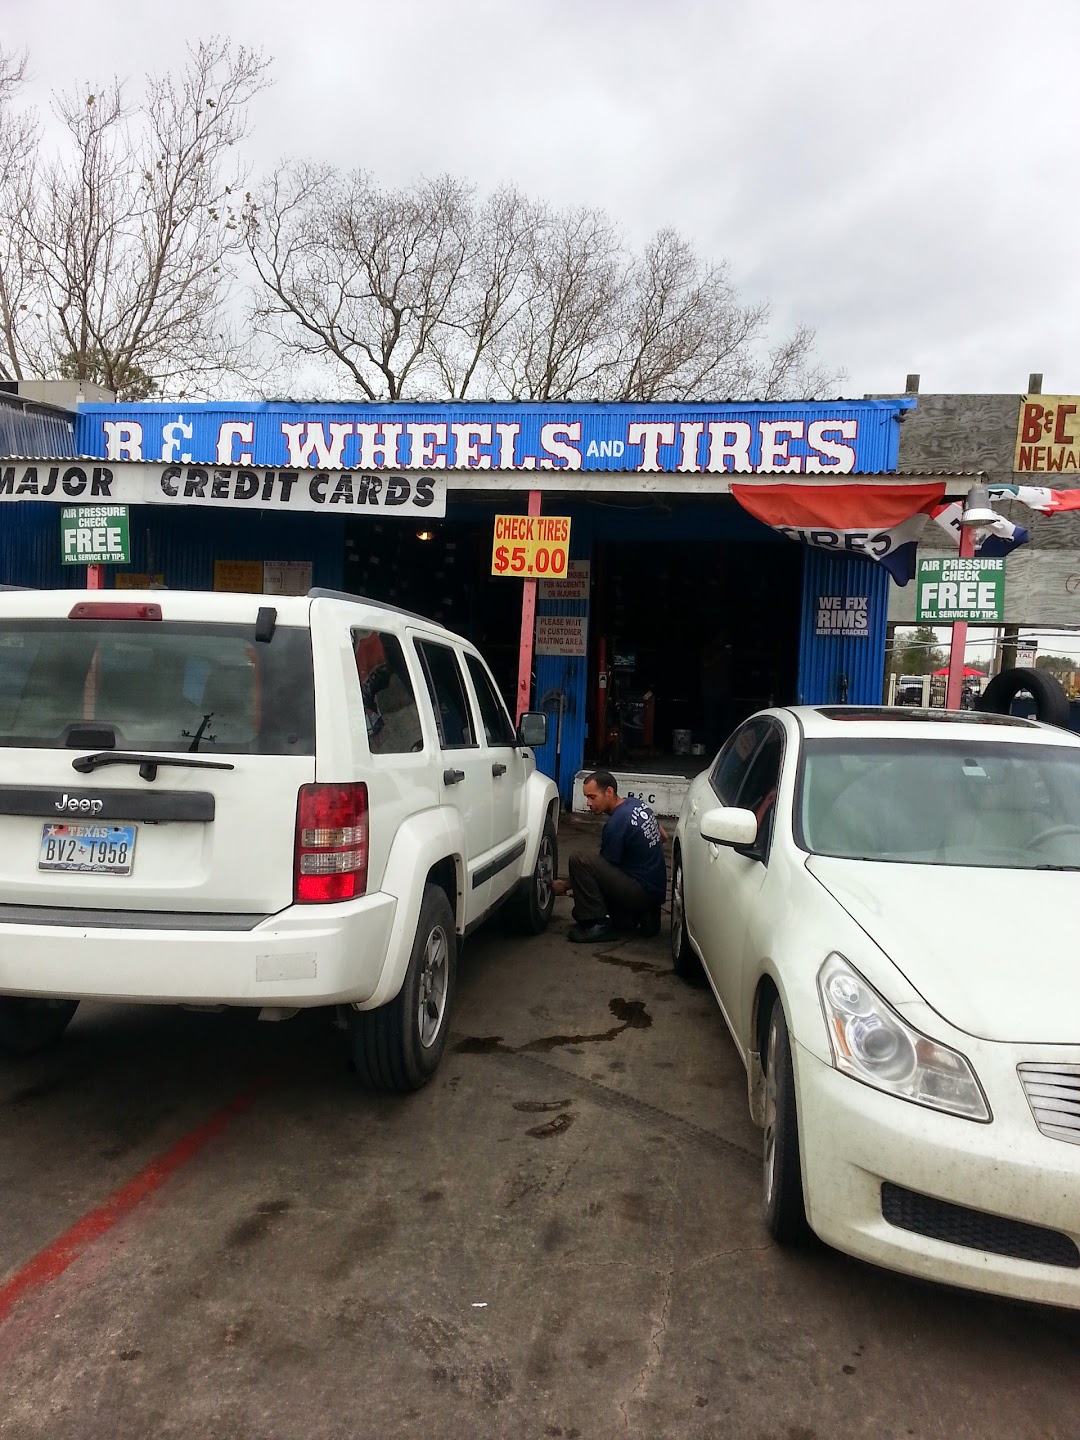 B & C Tire Shop